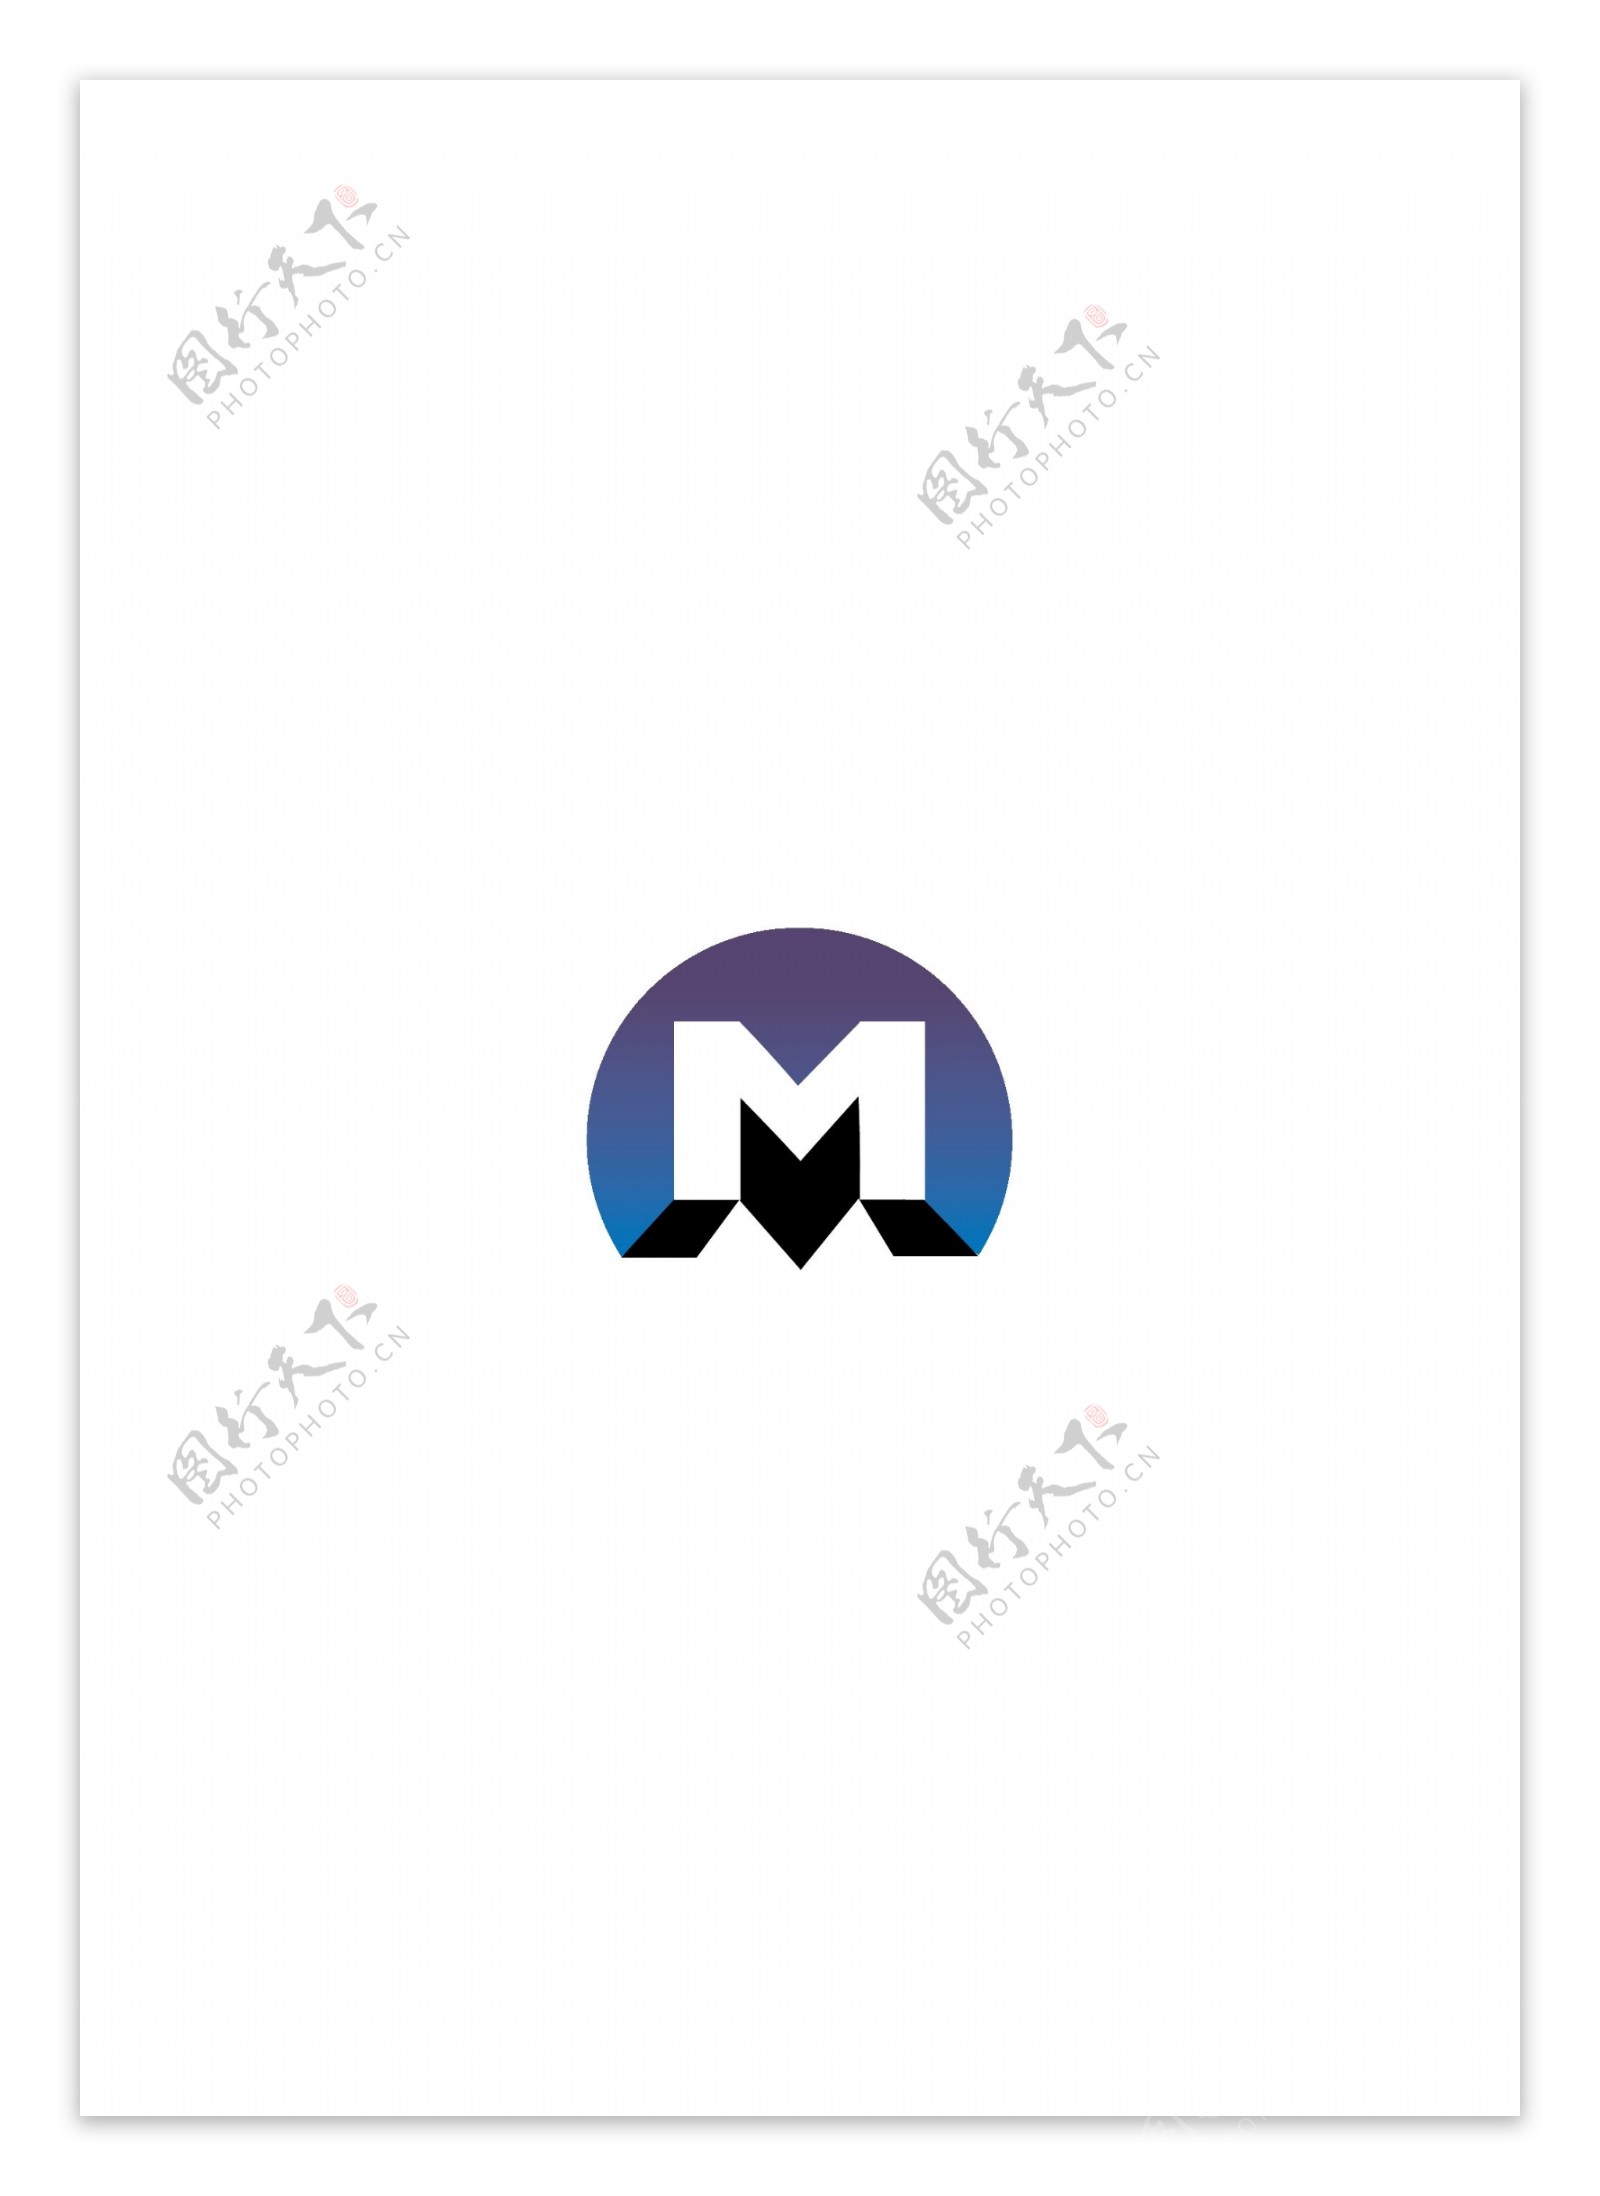 MetroRiooldlogo设计欣赏MetroRioold轻轨地铁标志下载标志设计欣赏